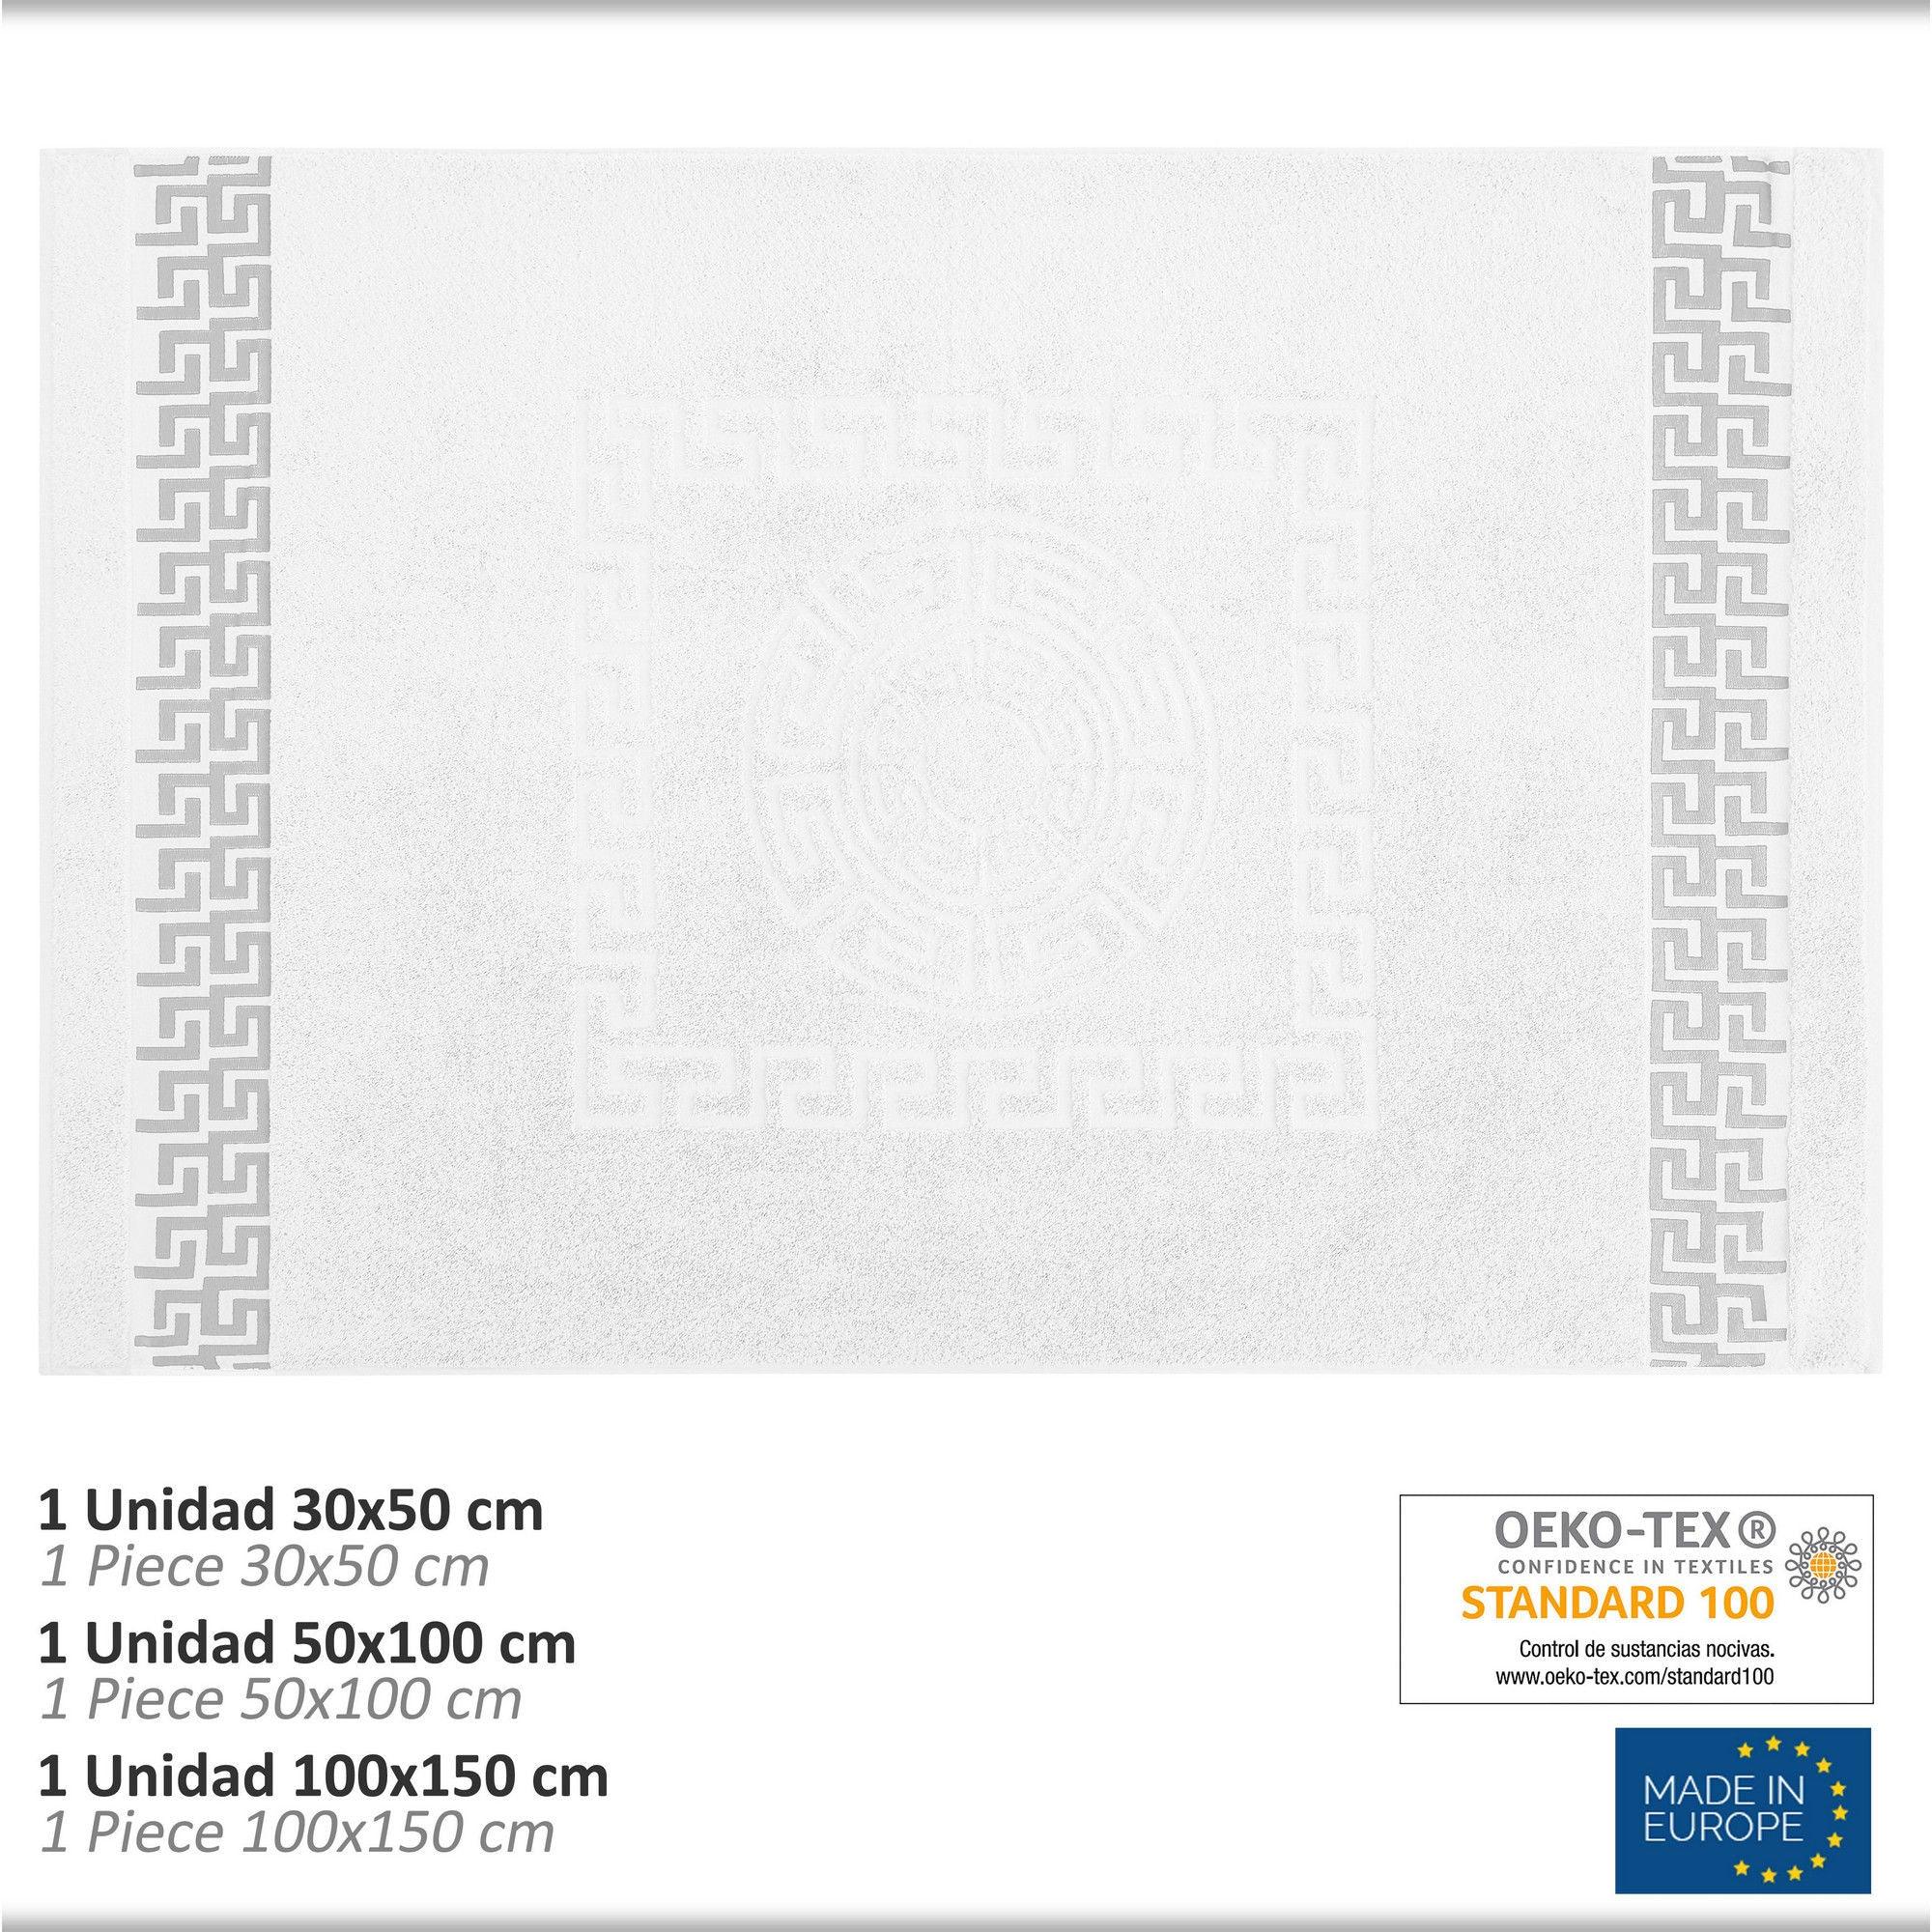 Juego de Toallas de Tocador, Lavabo y Sábana. 500 gr. Cesar - Eiffel Textile